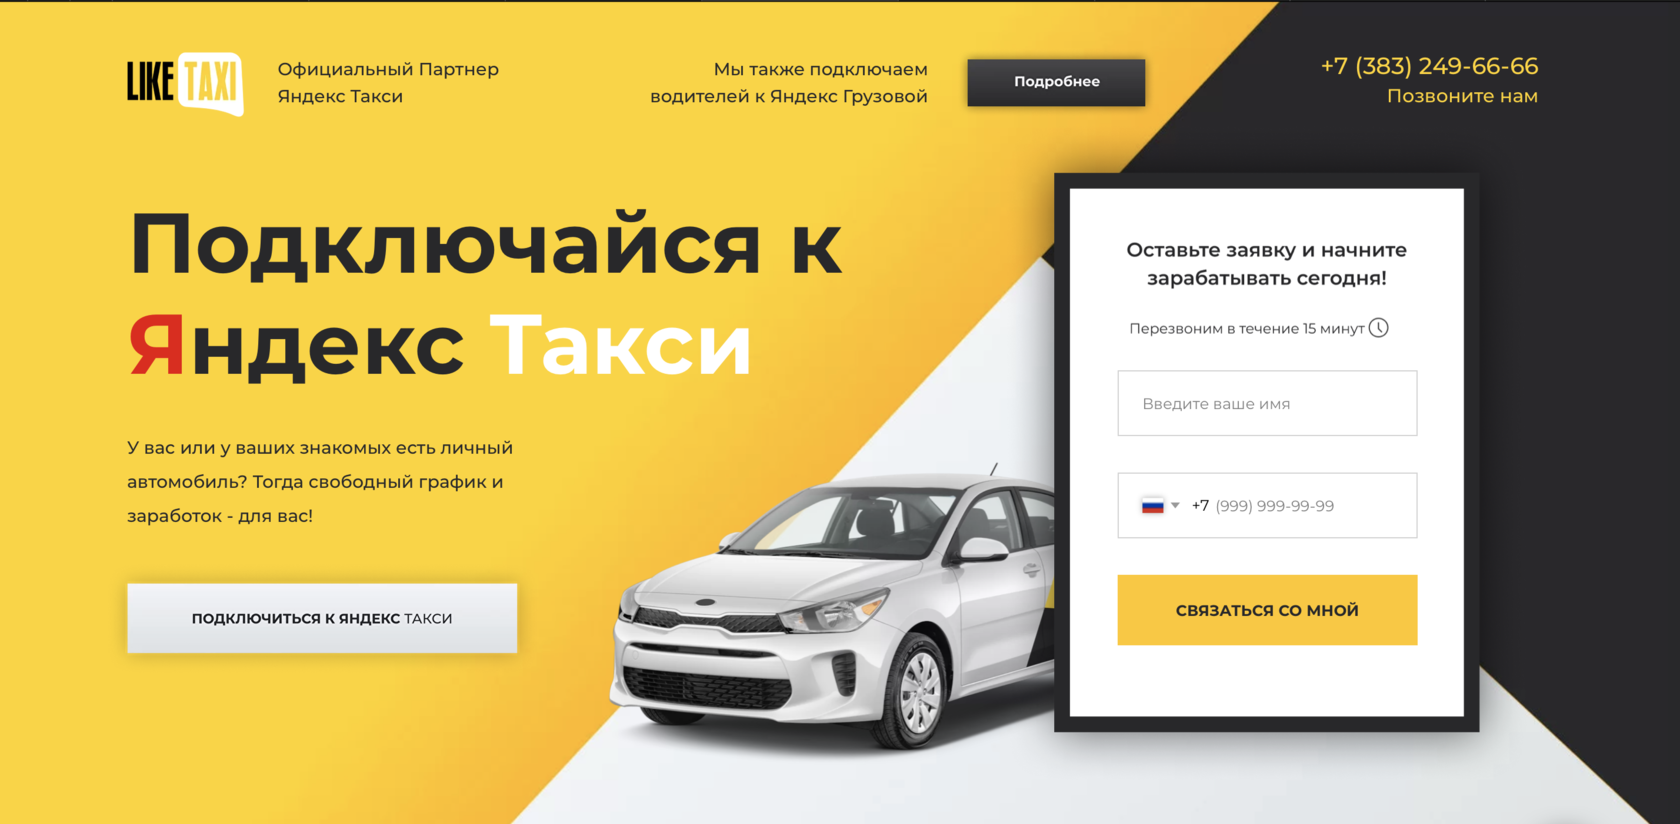 Как устроиться в Яндекс Такси без машины: условия и требования